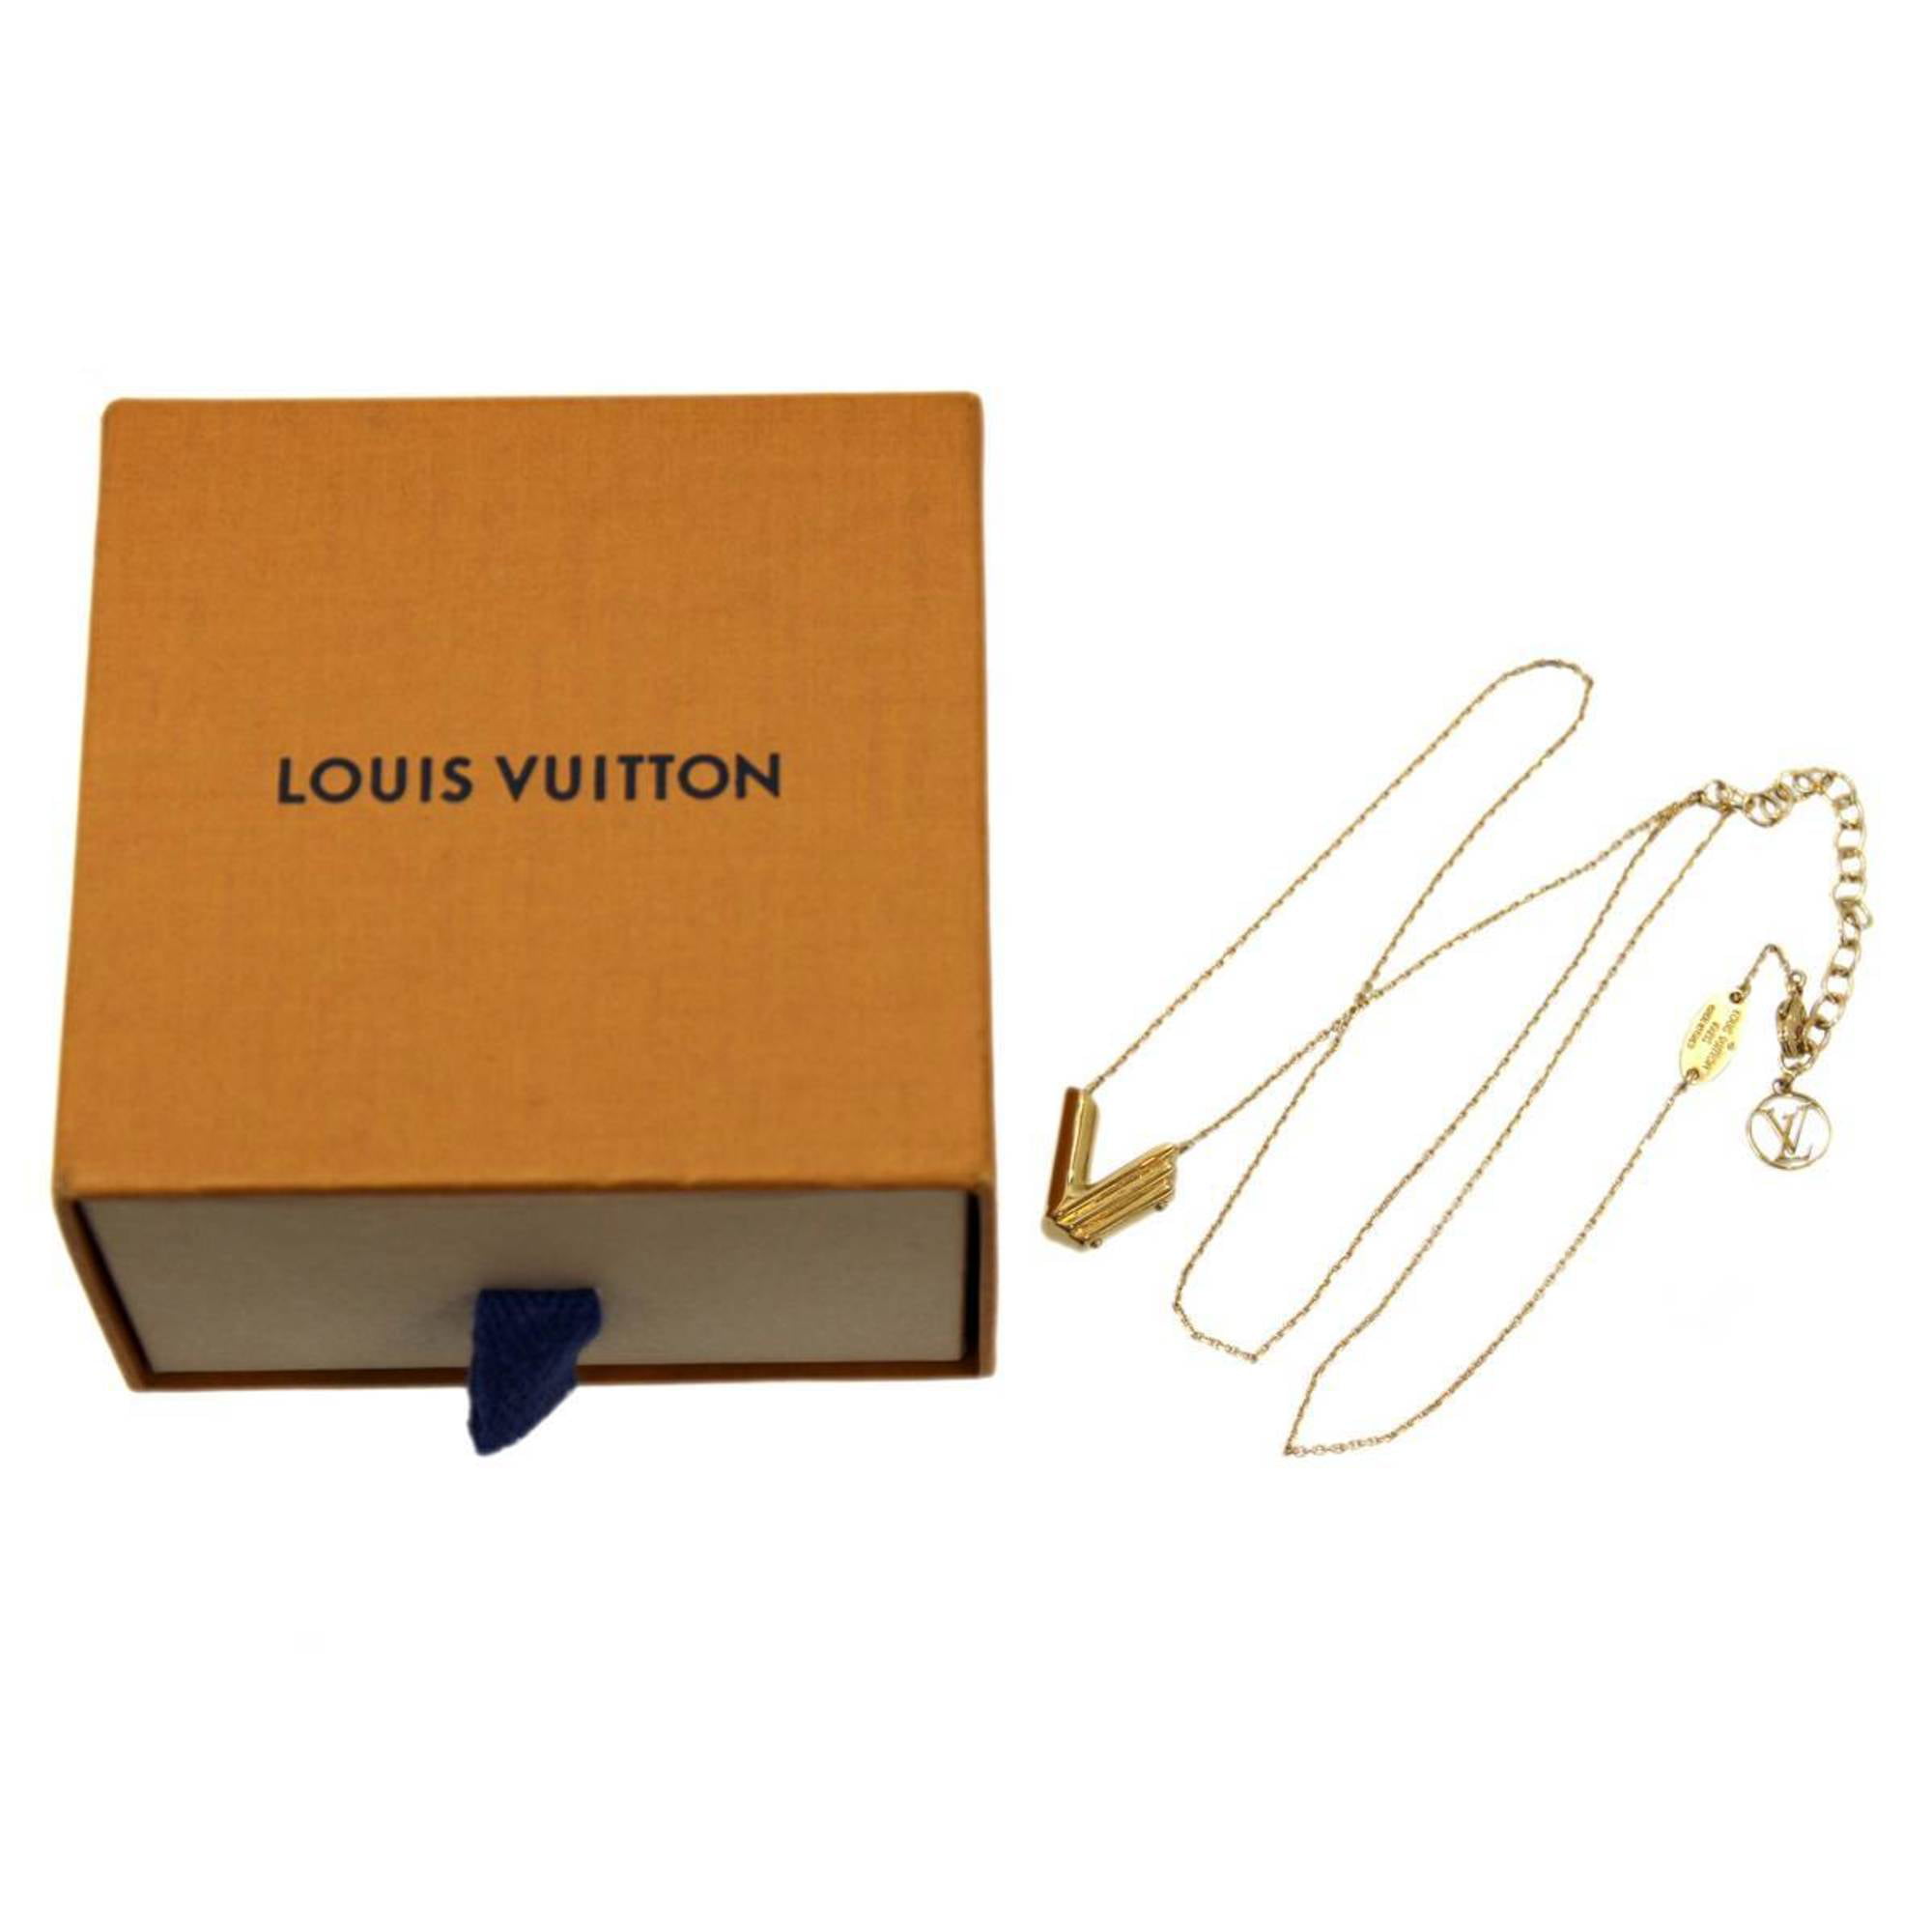 Louis Vuitton Clasp -  Singapore